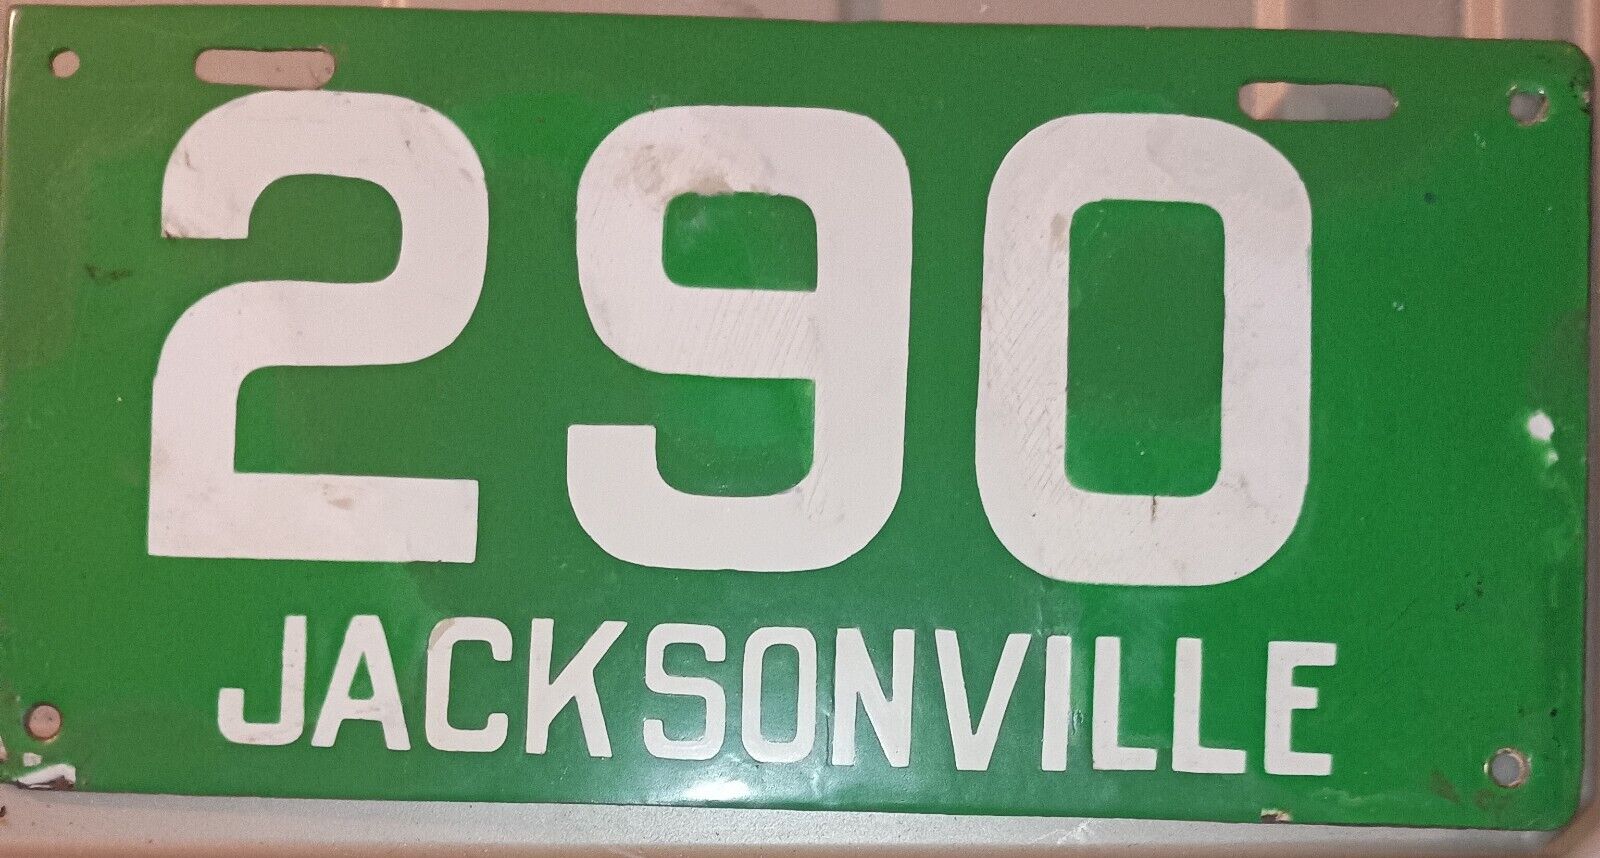 1913 Jacksonville Florida Porcelain License Plate Low Number #290 Rare Find